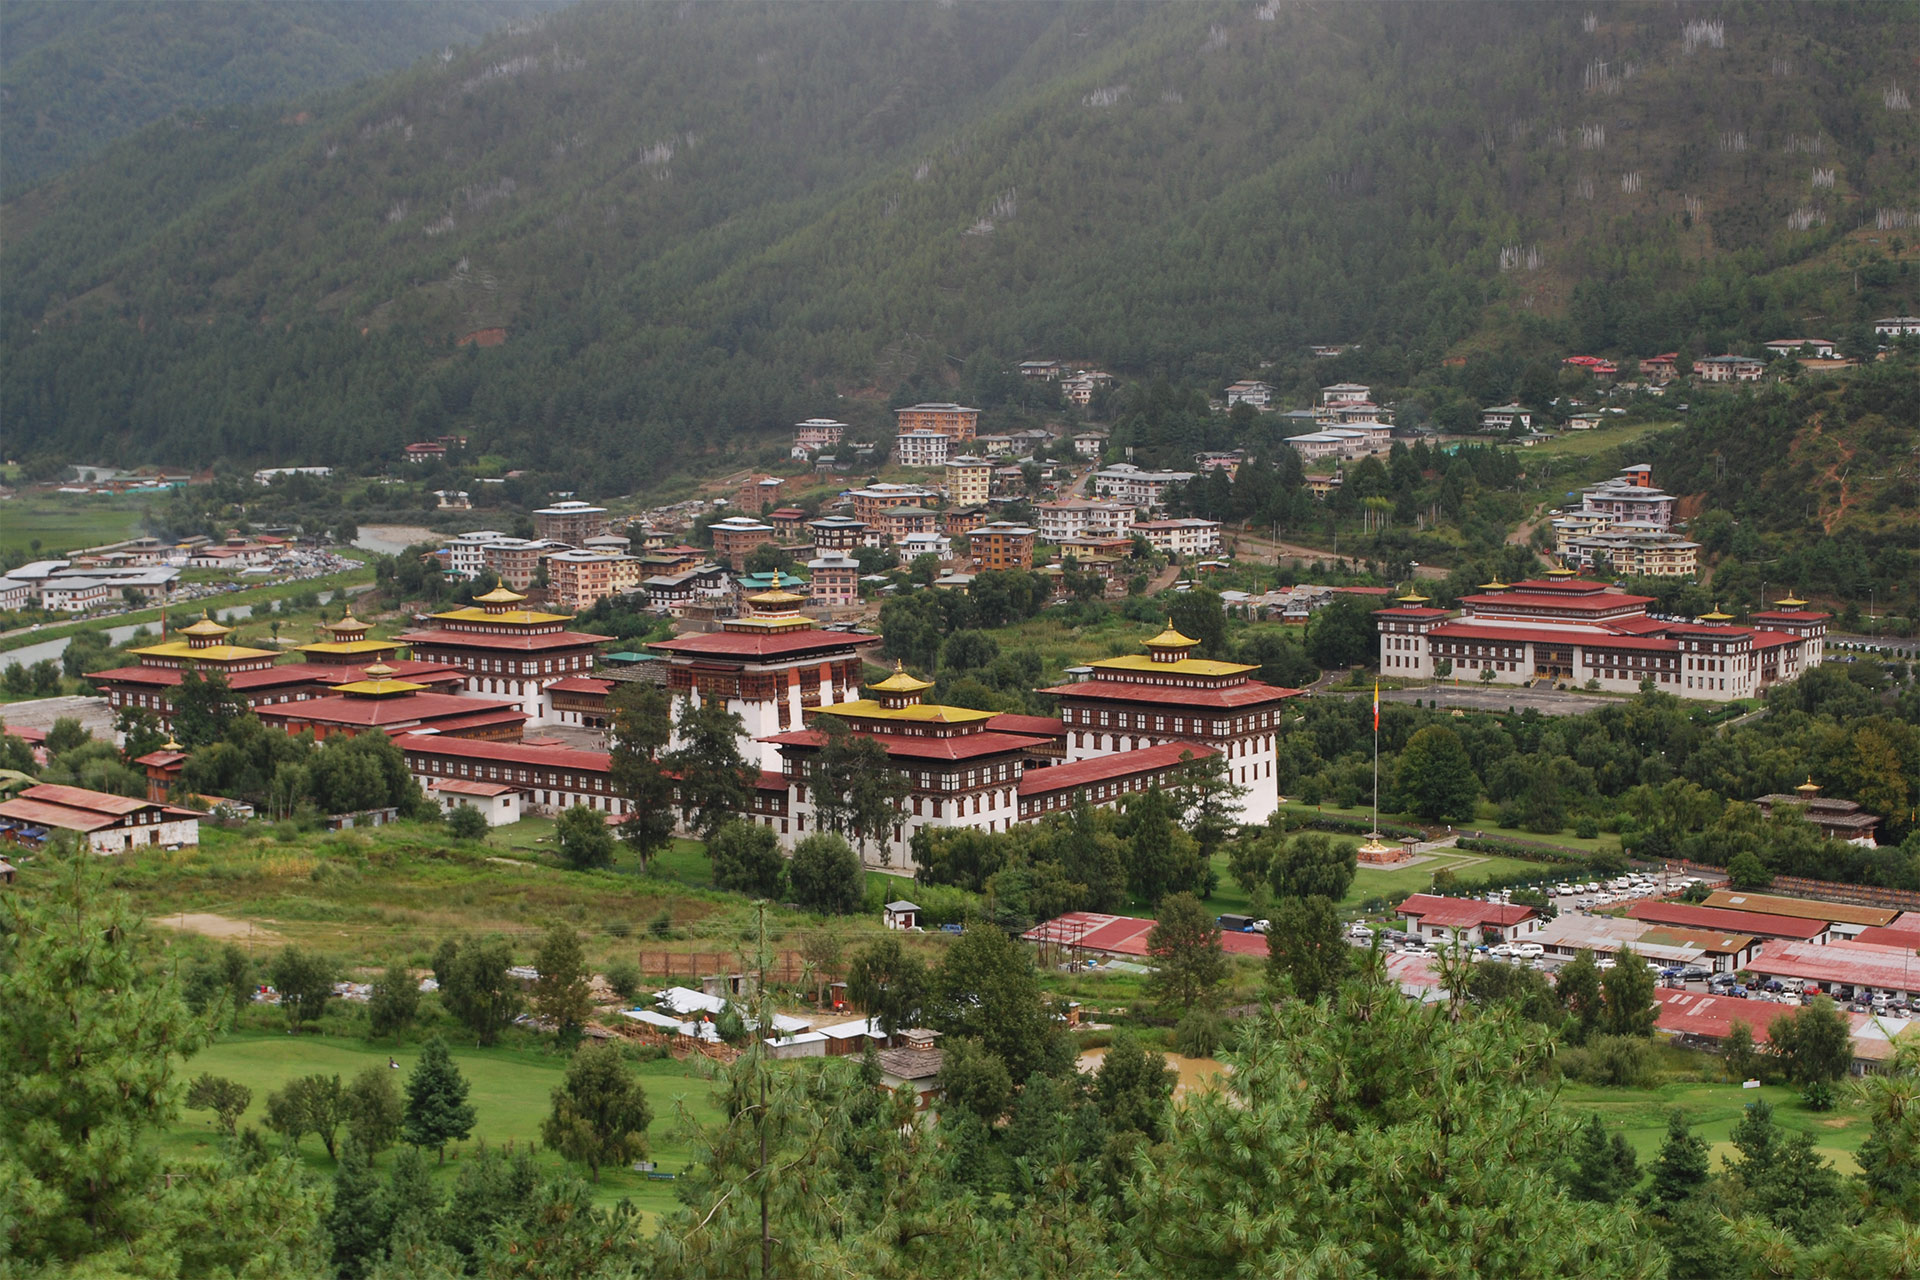 Highlight of Bhutan Tour